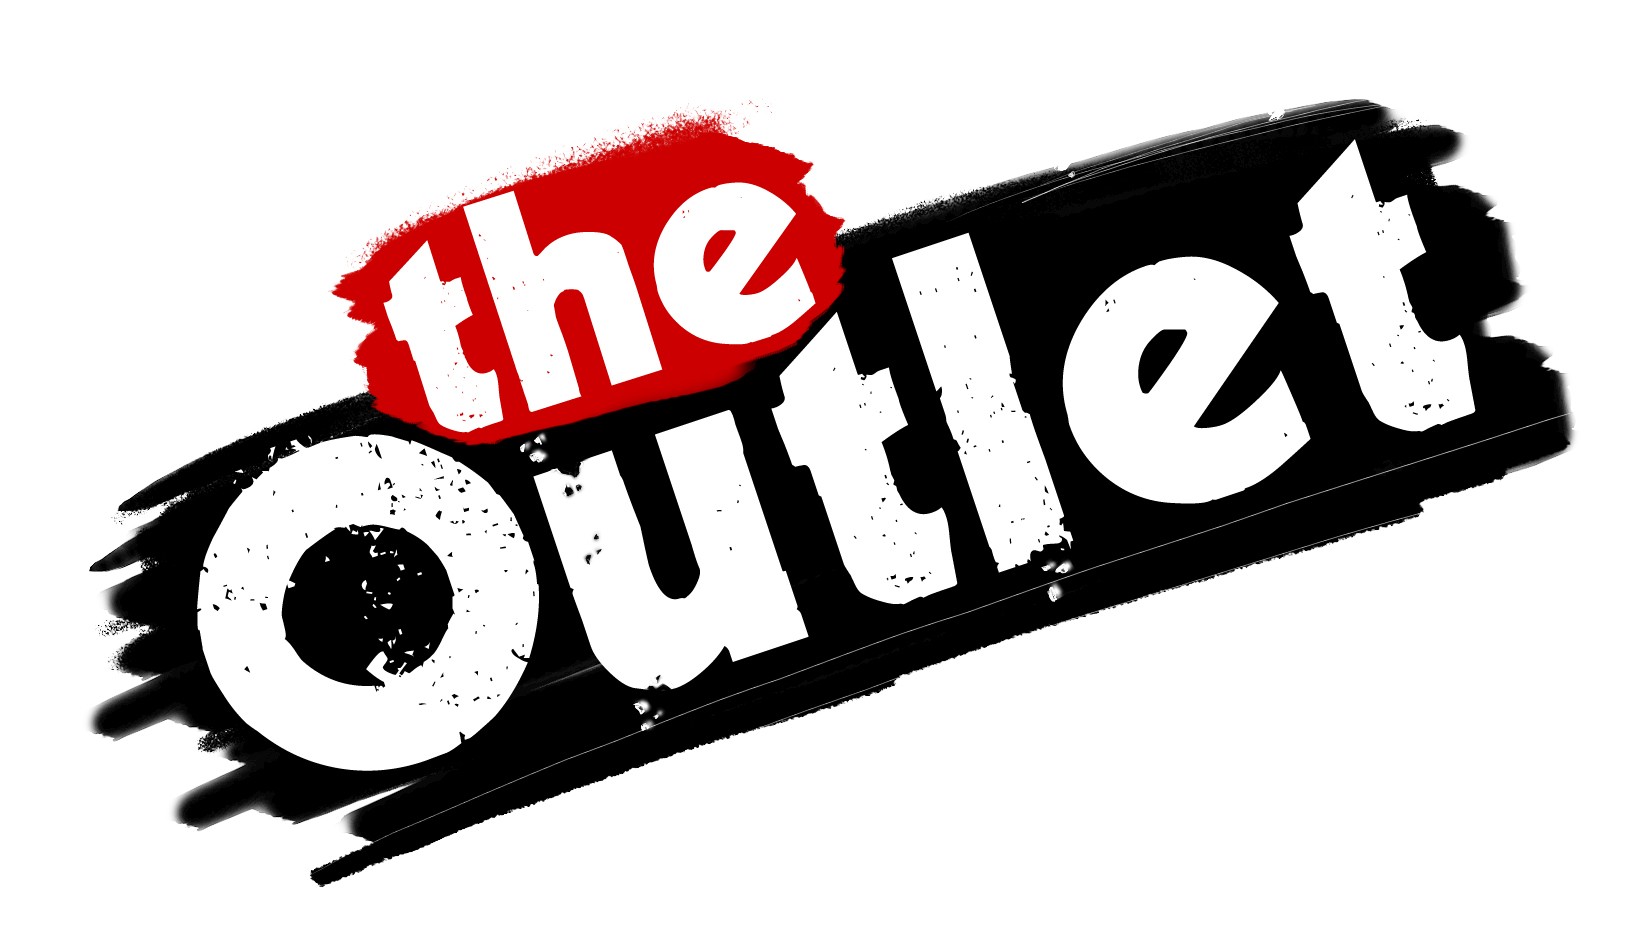 outlet_logo